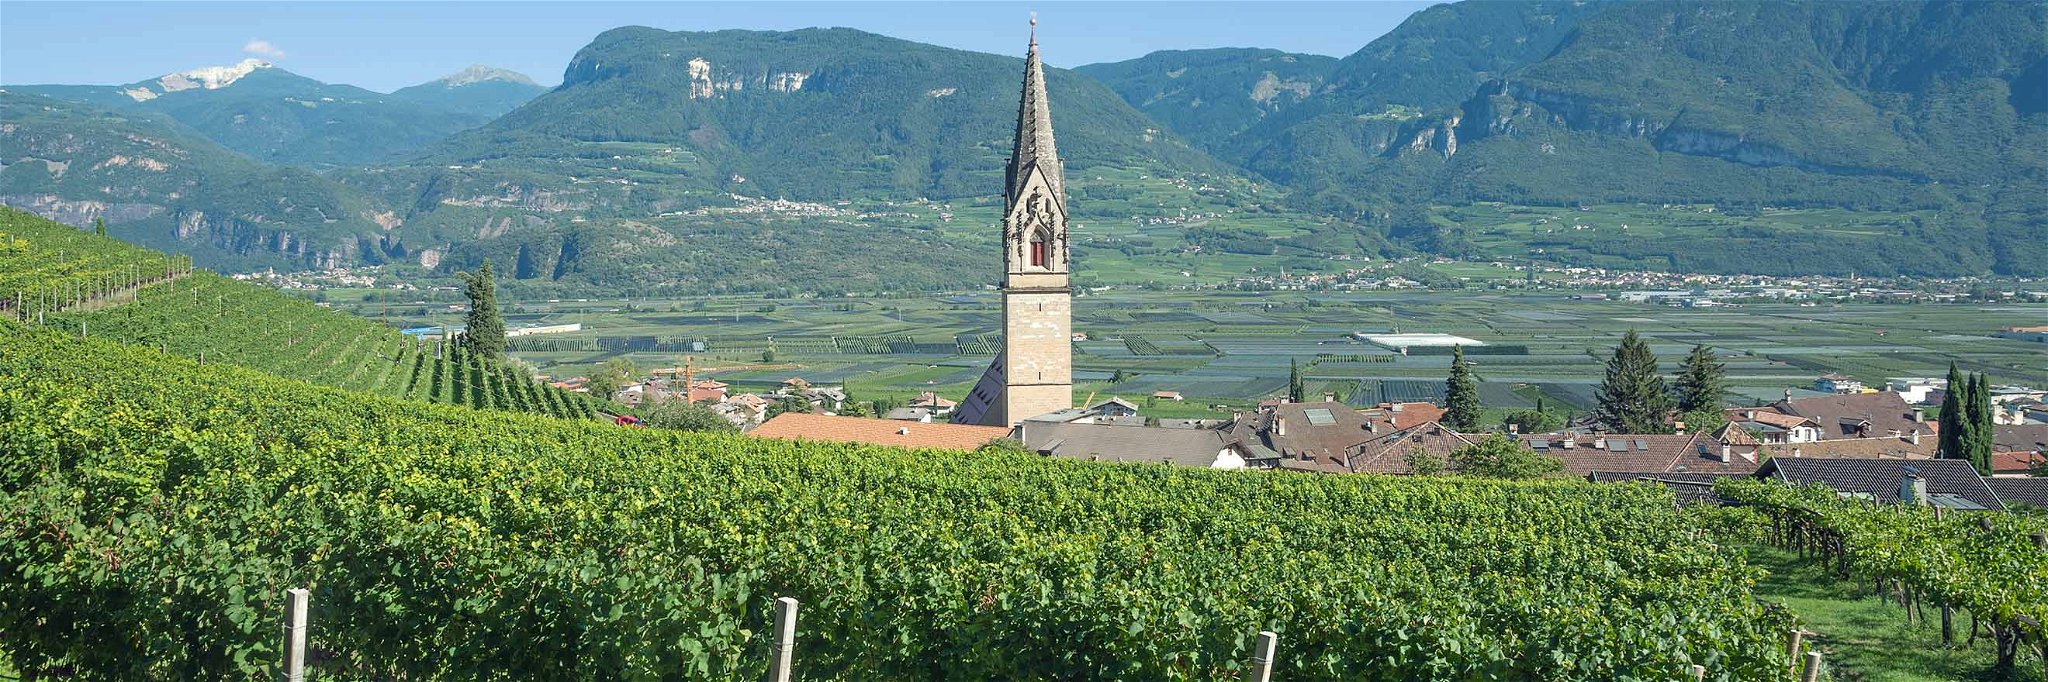 Weinreben in ganz Südtirol mussten heuer extremen Vegetationsperioden standhalten.&nbsp;